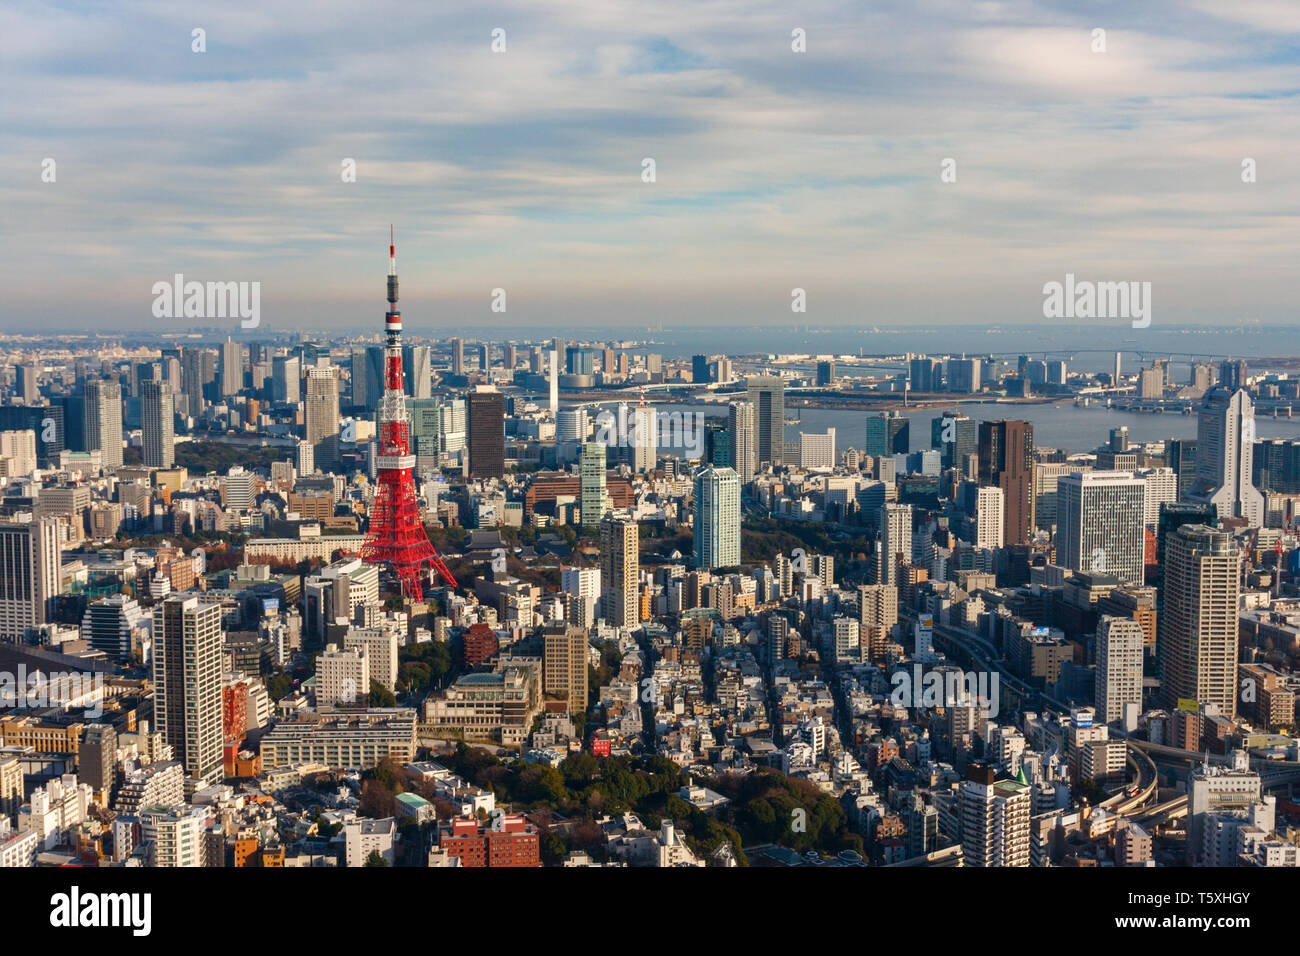 Luftaufnahme des Tokio Skyline und spezielle Bezirk Minato Stadt mit der Tokyo Tower und unzählige Wolkenkratzer. Japan. Stockfoto